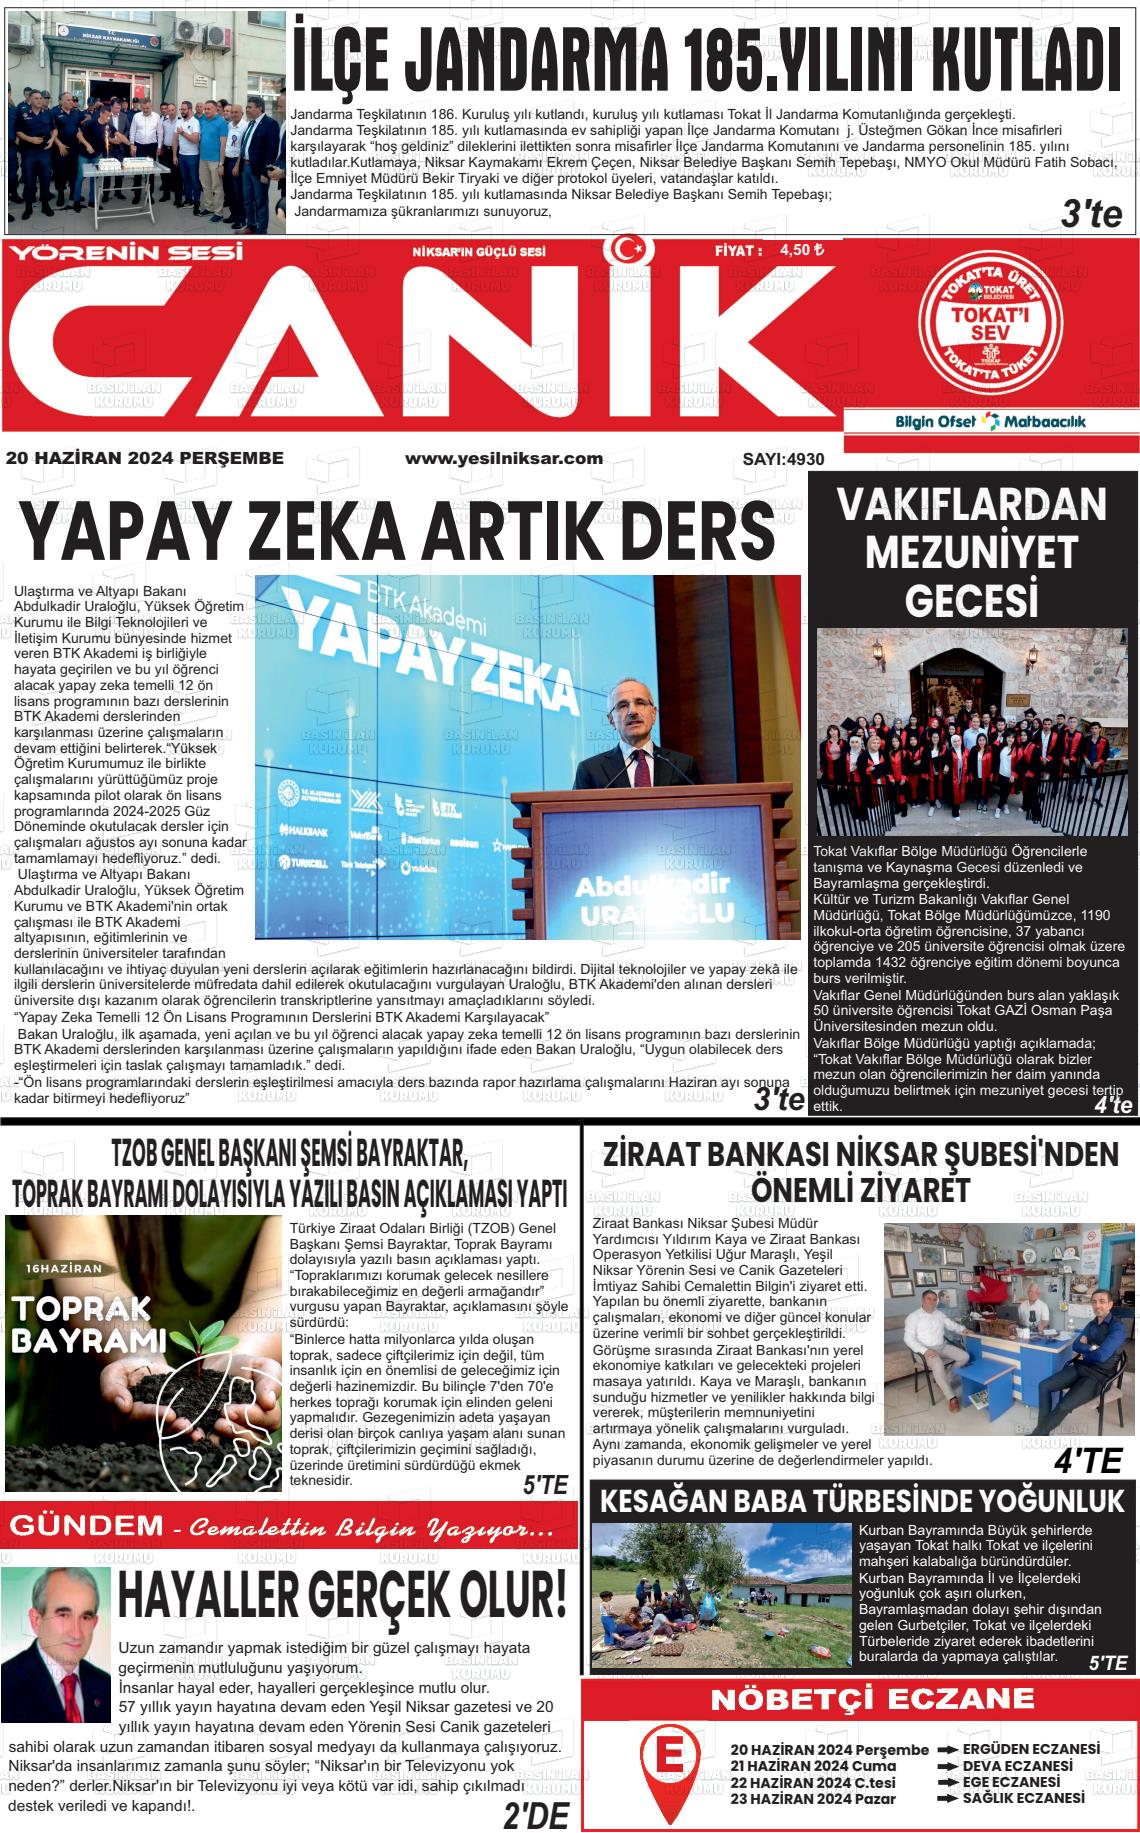 YÖRENİN SESİ CANİK Gazetesi